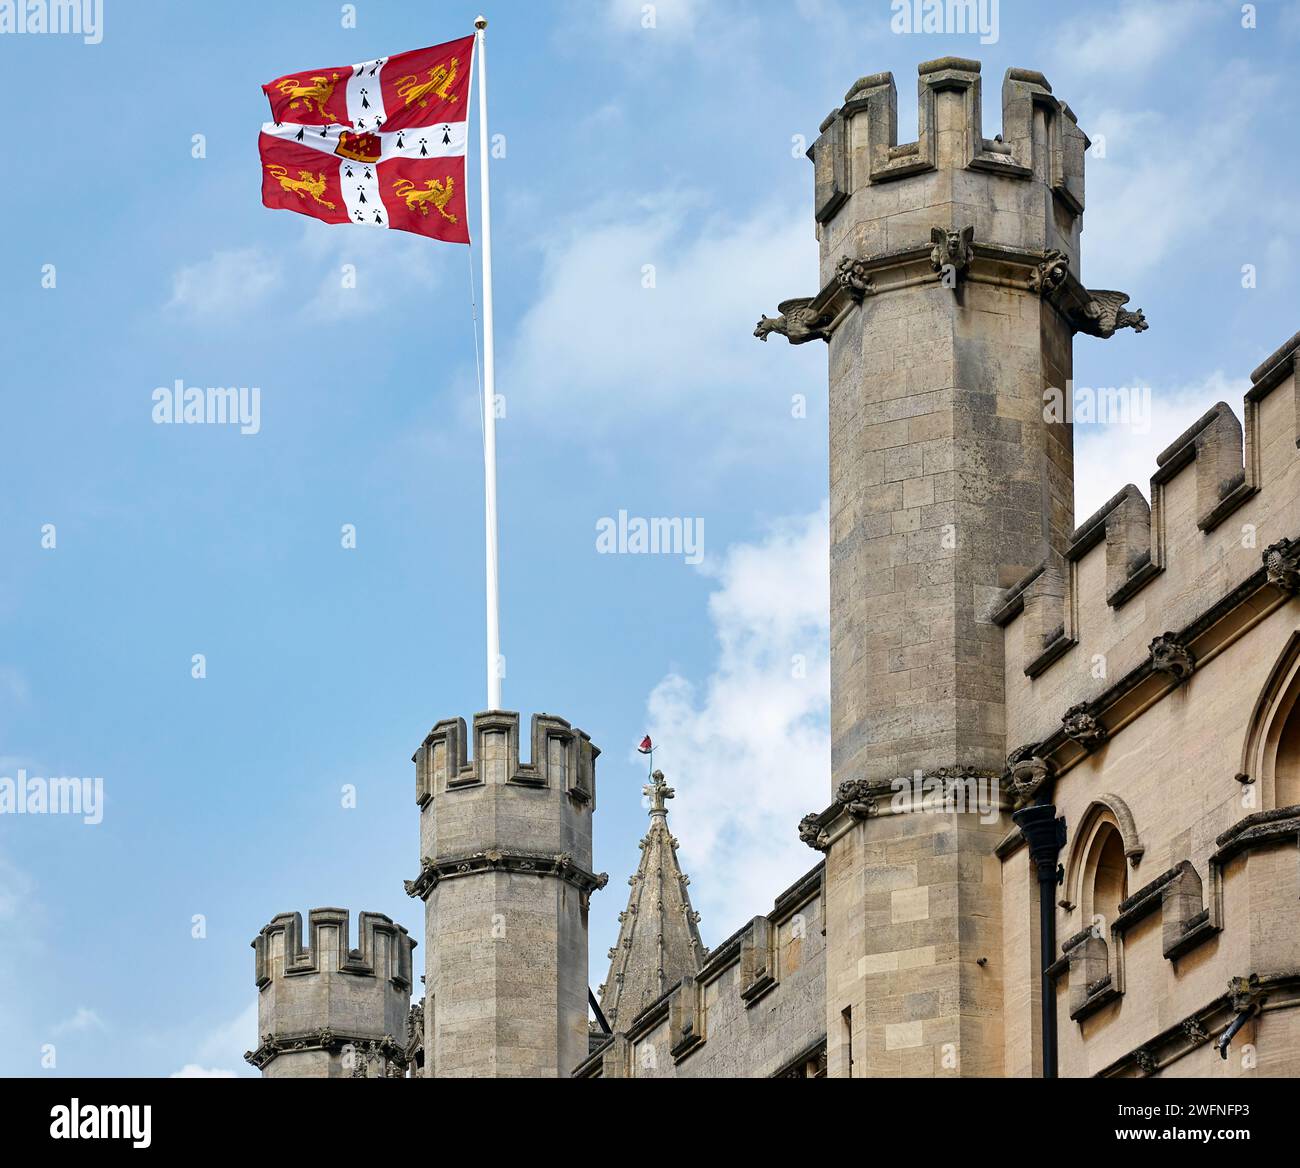 Drapeau de l'Université de Cambridge agitant sur les murs et les tours battues du bâtiment Old Schools. Université de Cambridge. Royaume-Uni. Banque D'Images